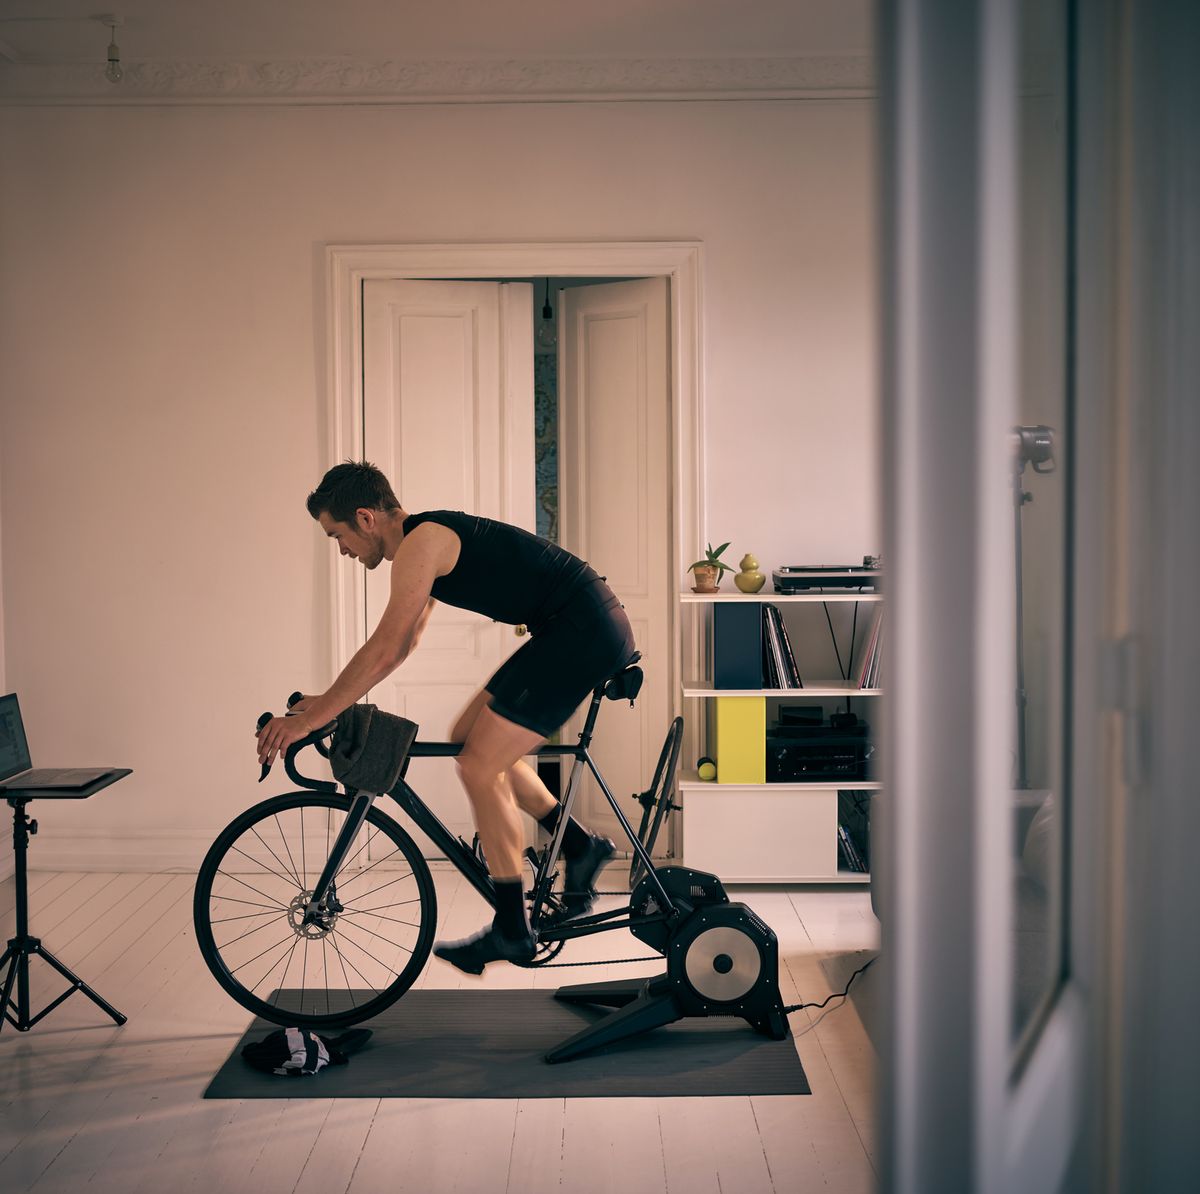 フィットネスバイク スピンバイク エアロバイク 家庭用 室内トレーニング